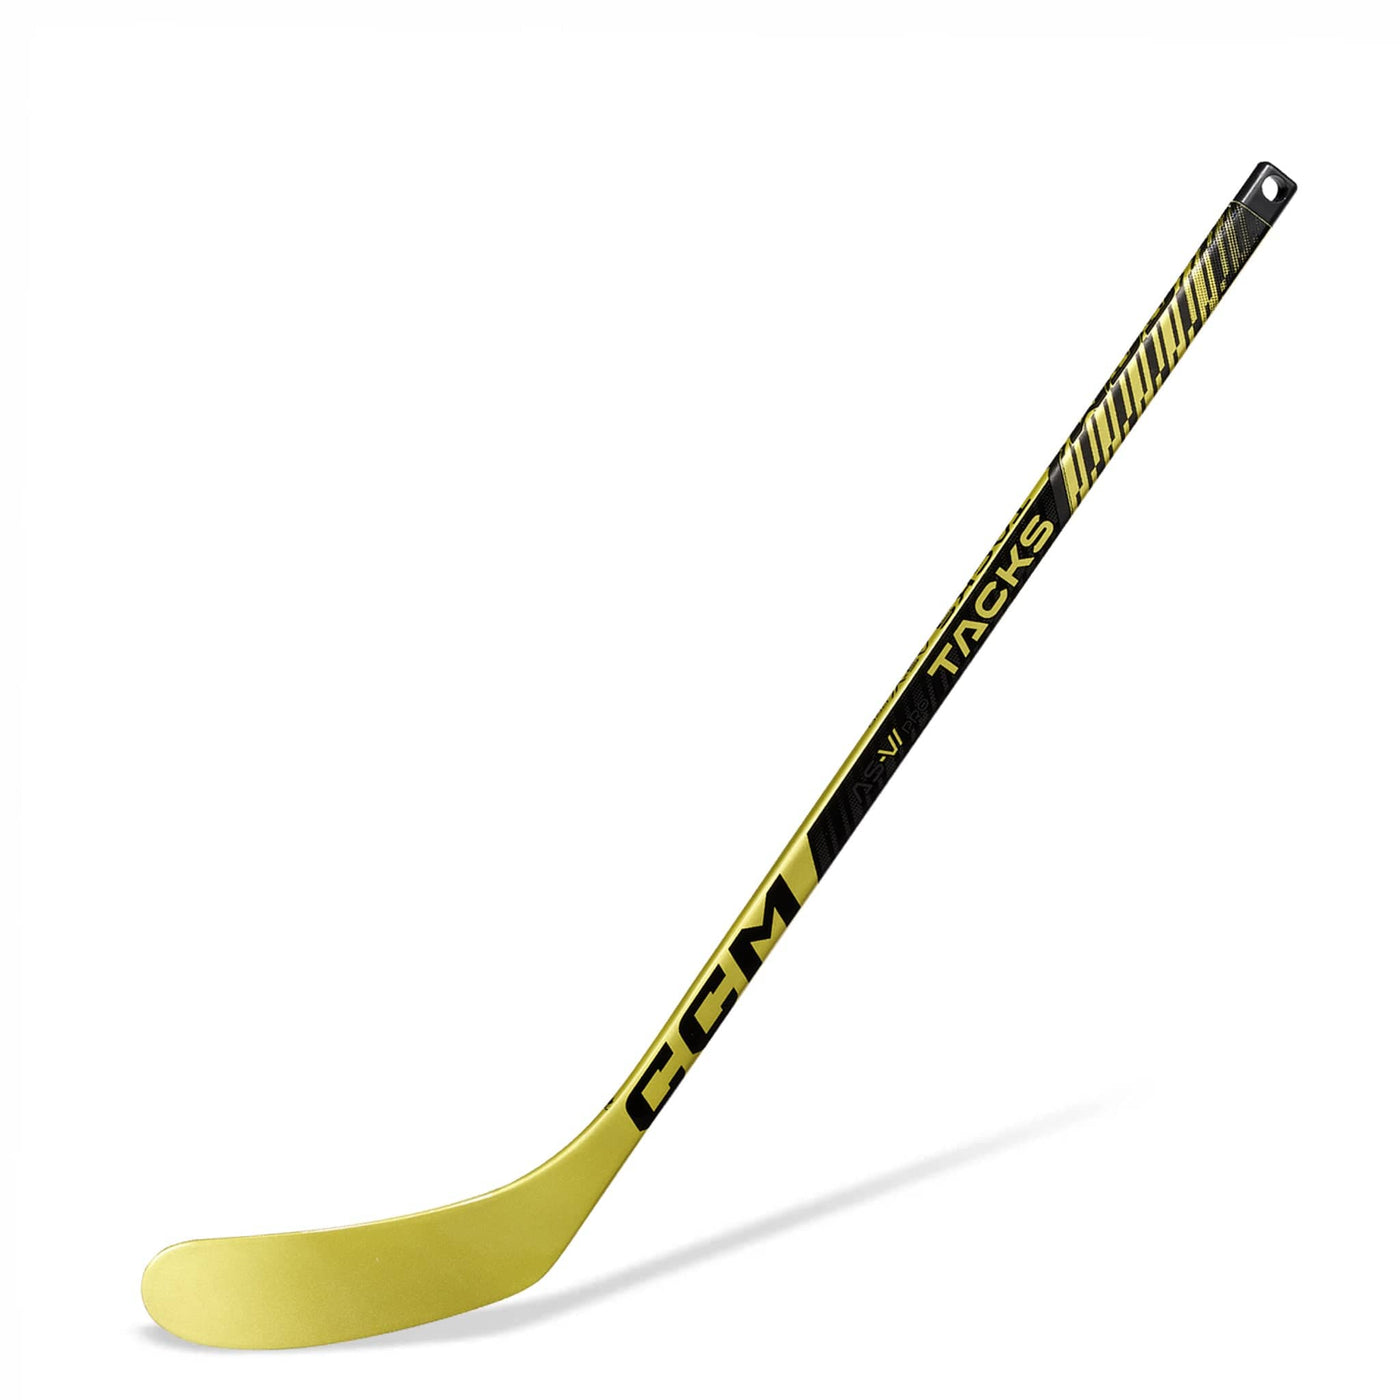 CCM Super Tacks AS6 Composite Mini Hockey Stick - TheHockeyShop.com